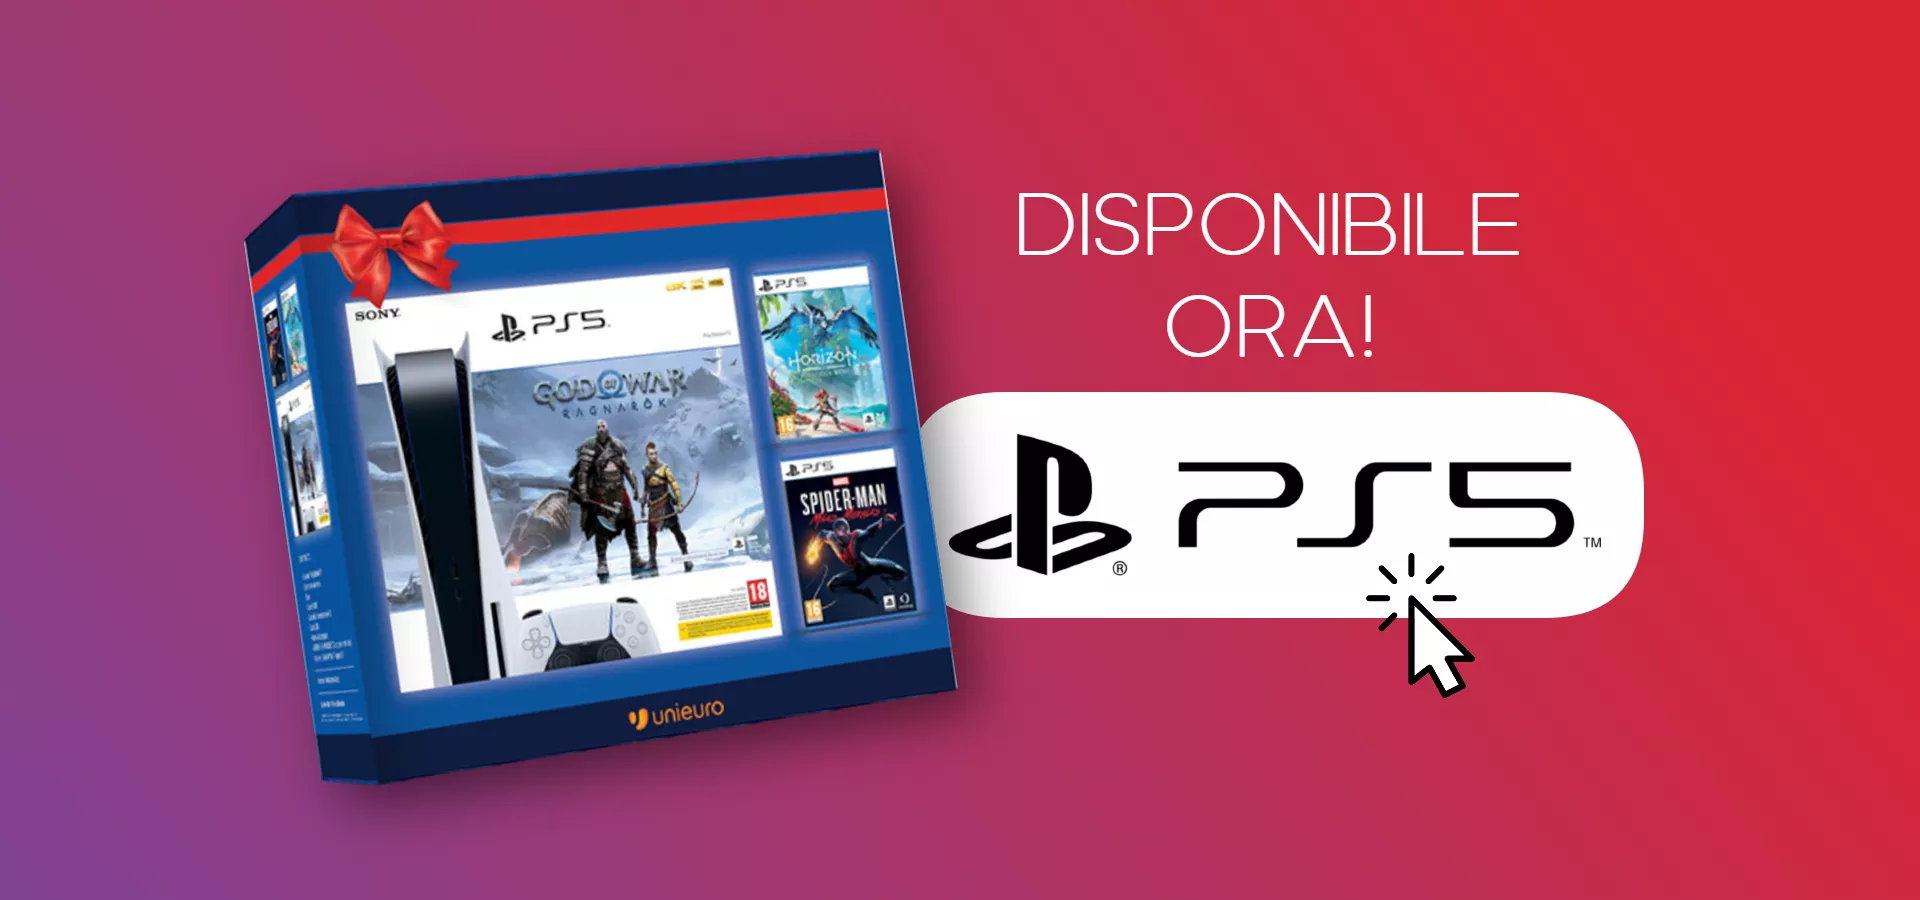 Giochi PS5 da 9.99€: offerte Black Friday con sconti su God of War, Horizon  e Spider-Man